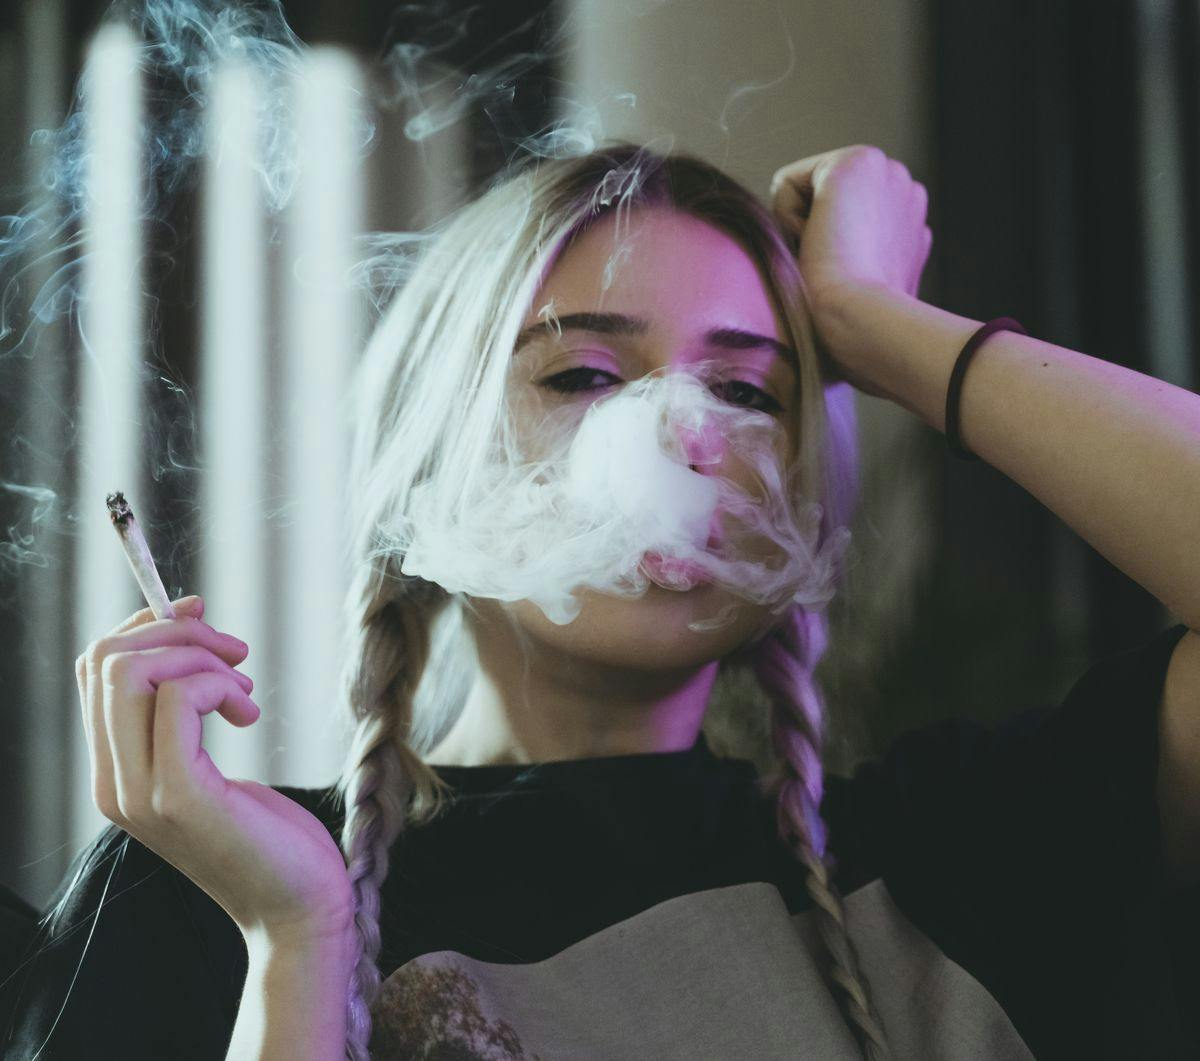 A woman smokes a joint, by Damian Barczak via Unsplash